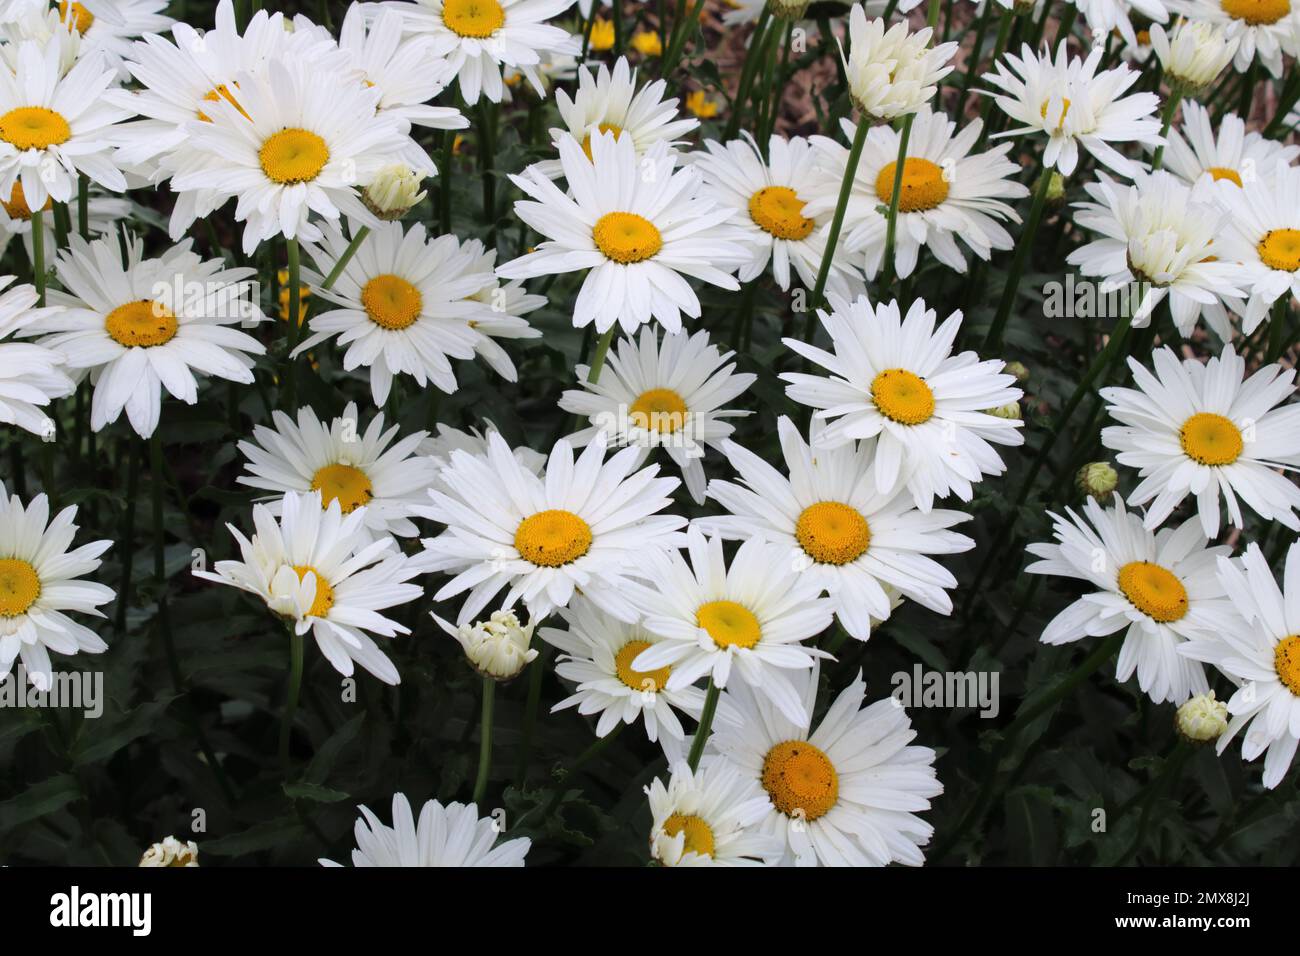 Shasta Daisy (Chrysanthemum maximum) in garden. Stock Photo